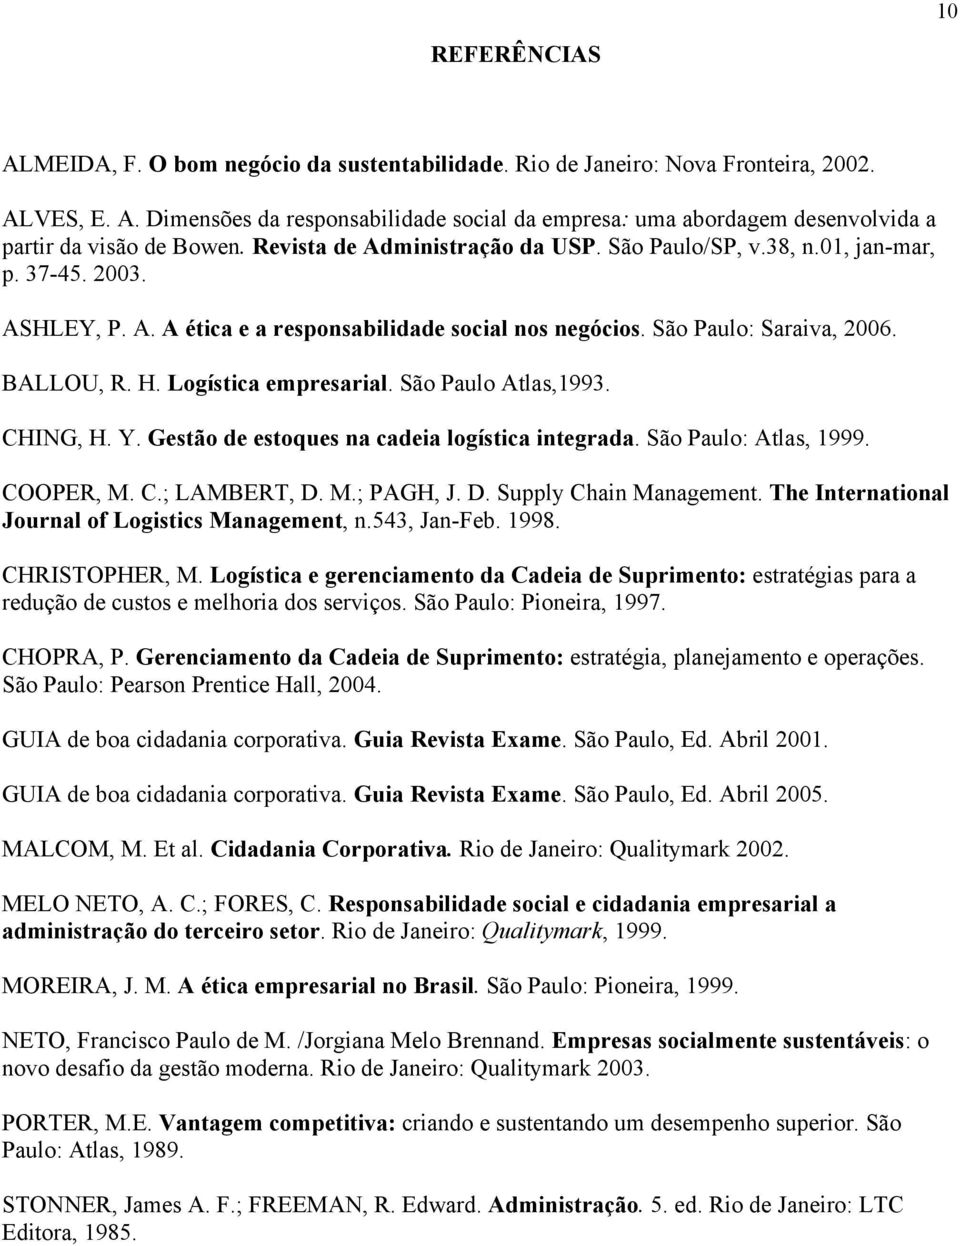 Logística empresarial. São Paulo Atlas,1993. CHING, H. Y. Gestão de estoques na cadeia logística integrada. São Paulo: Atlas, 1999. COOPER, M. C.; LAMBERT, D. M.; PAGH, J. D. Supply Chain Management.